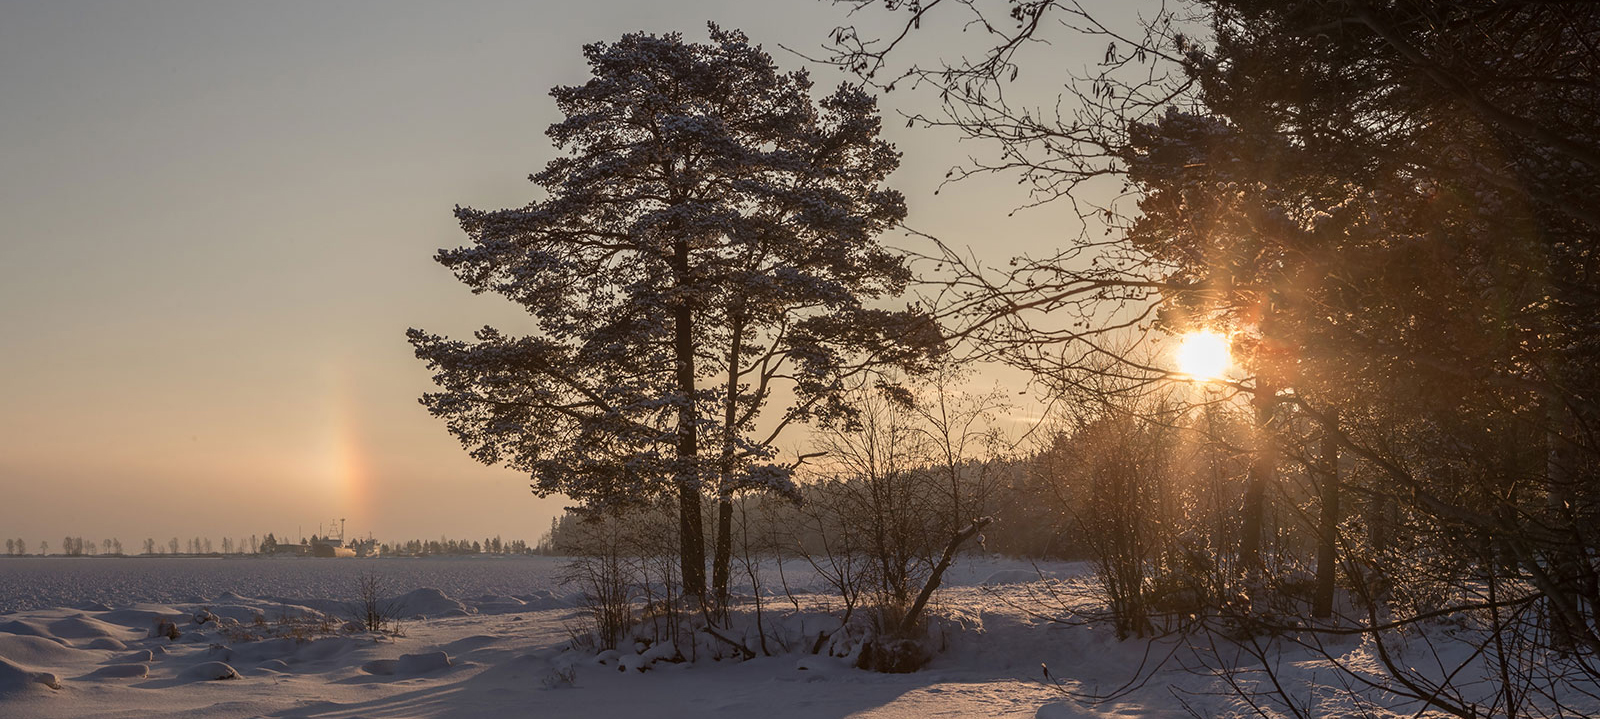 Фотограф сделал удивительные кадры заснеженной и морозной Карелии (ФОТО)